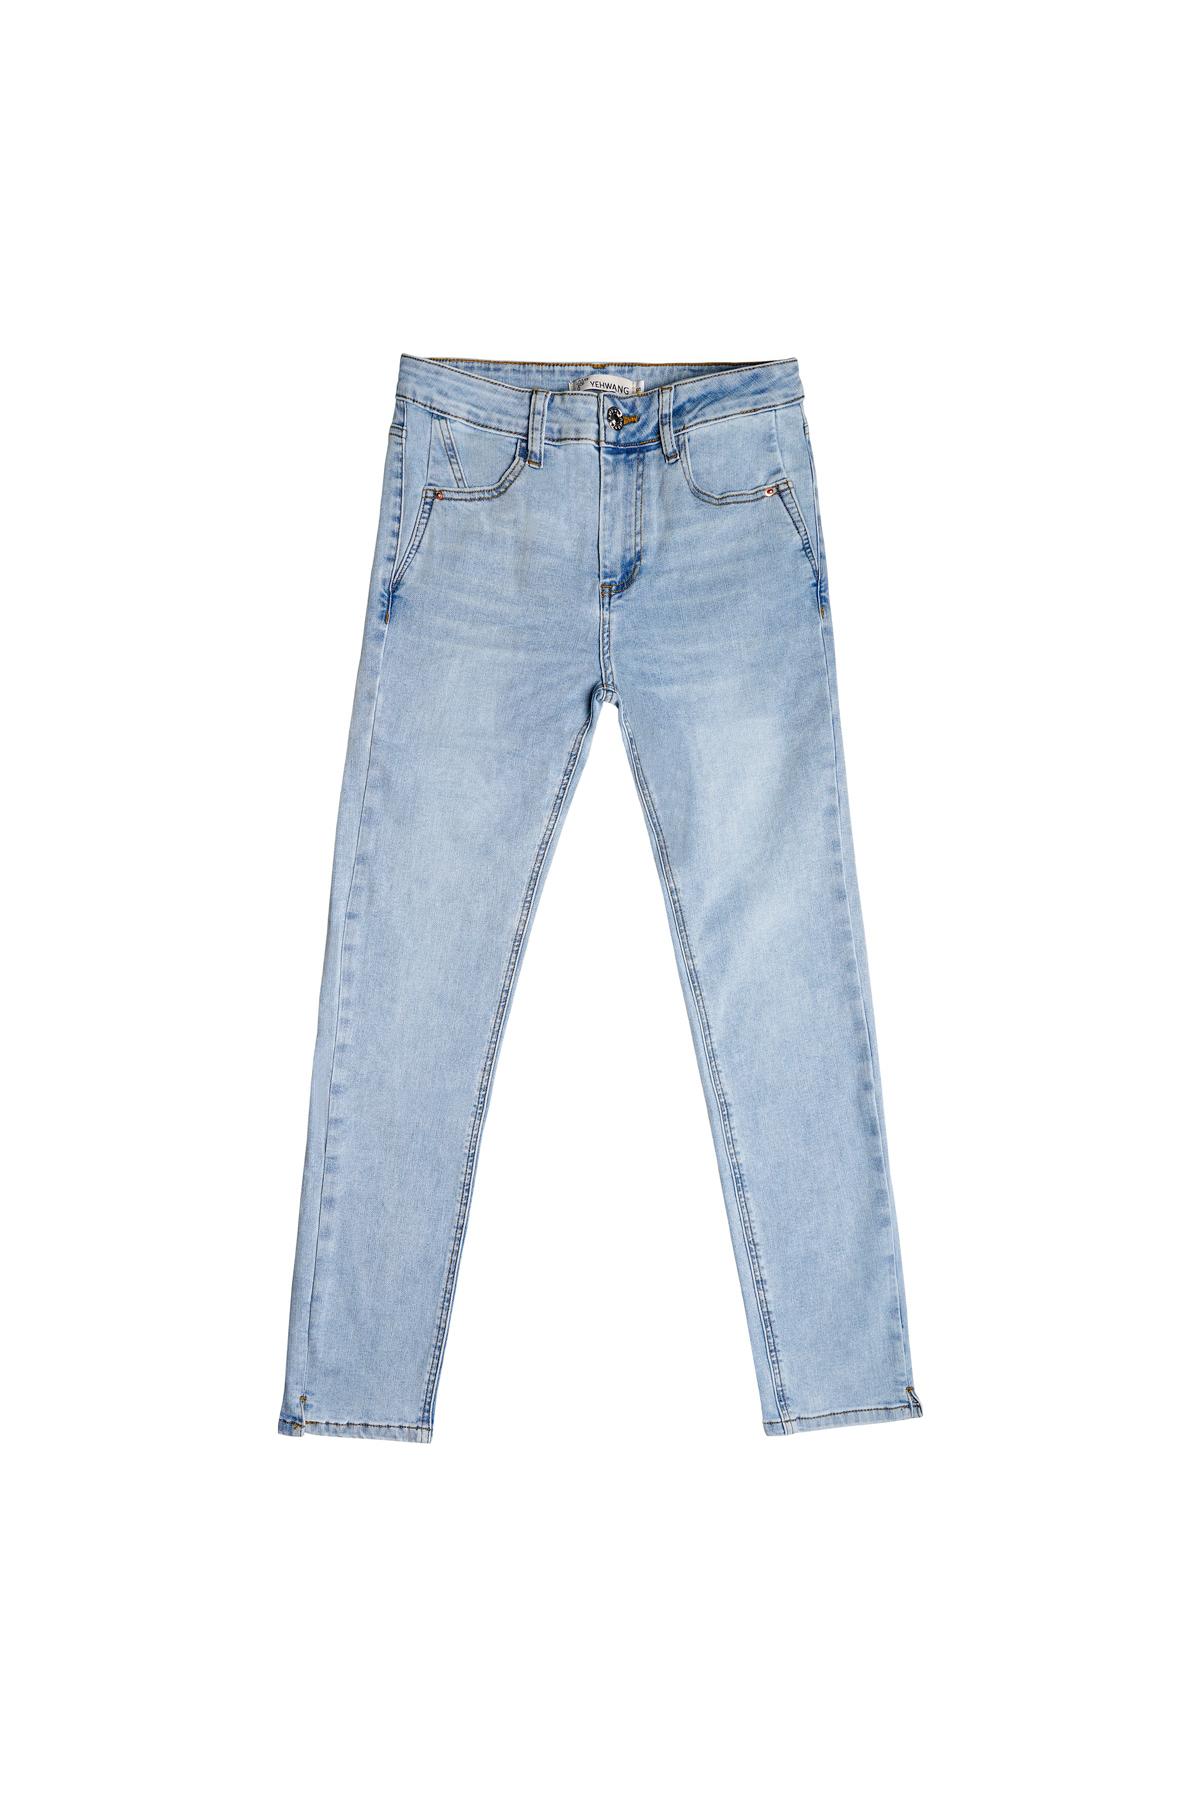 Hellblaue, knöchellange Jeans aus dehnbarem Denim XS